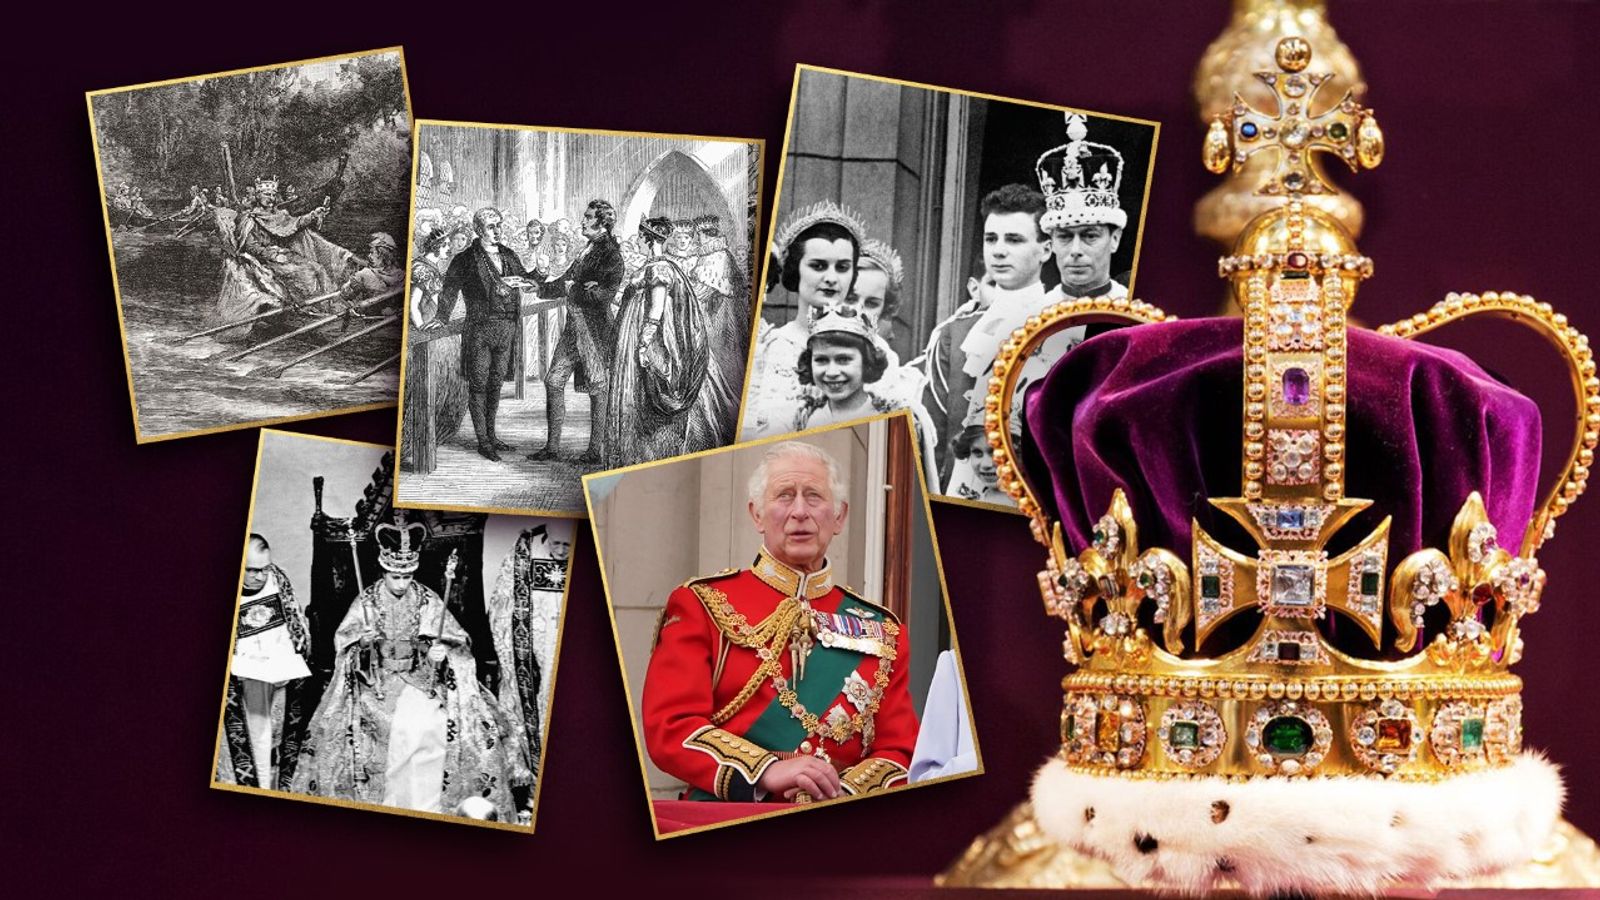 Koronacja: czy koronacja króla Karola III będzie chwilą radości, czy bezsensowną, kosztowną czynnością?  |  Wiadomości z Wielkiej Brytanii